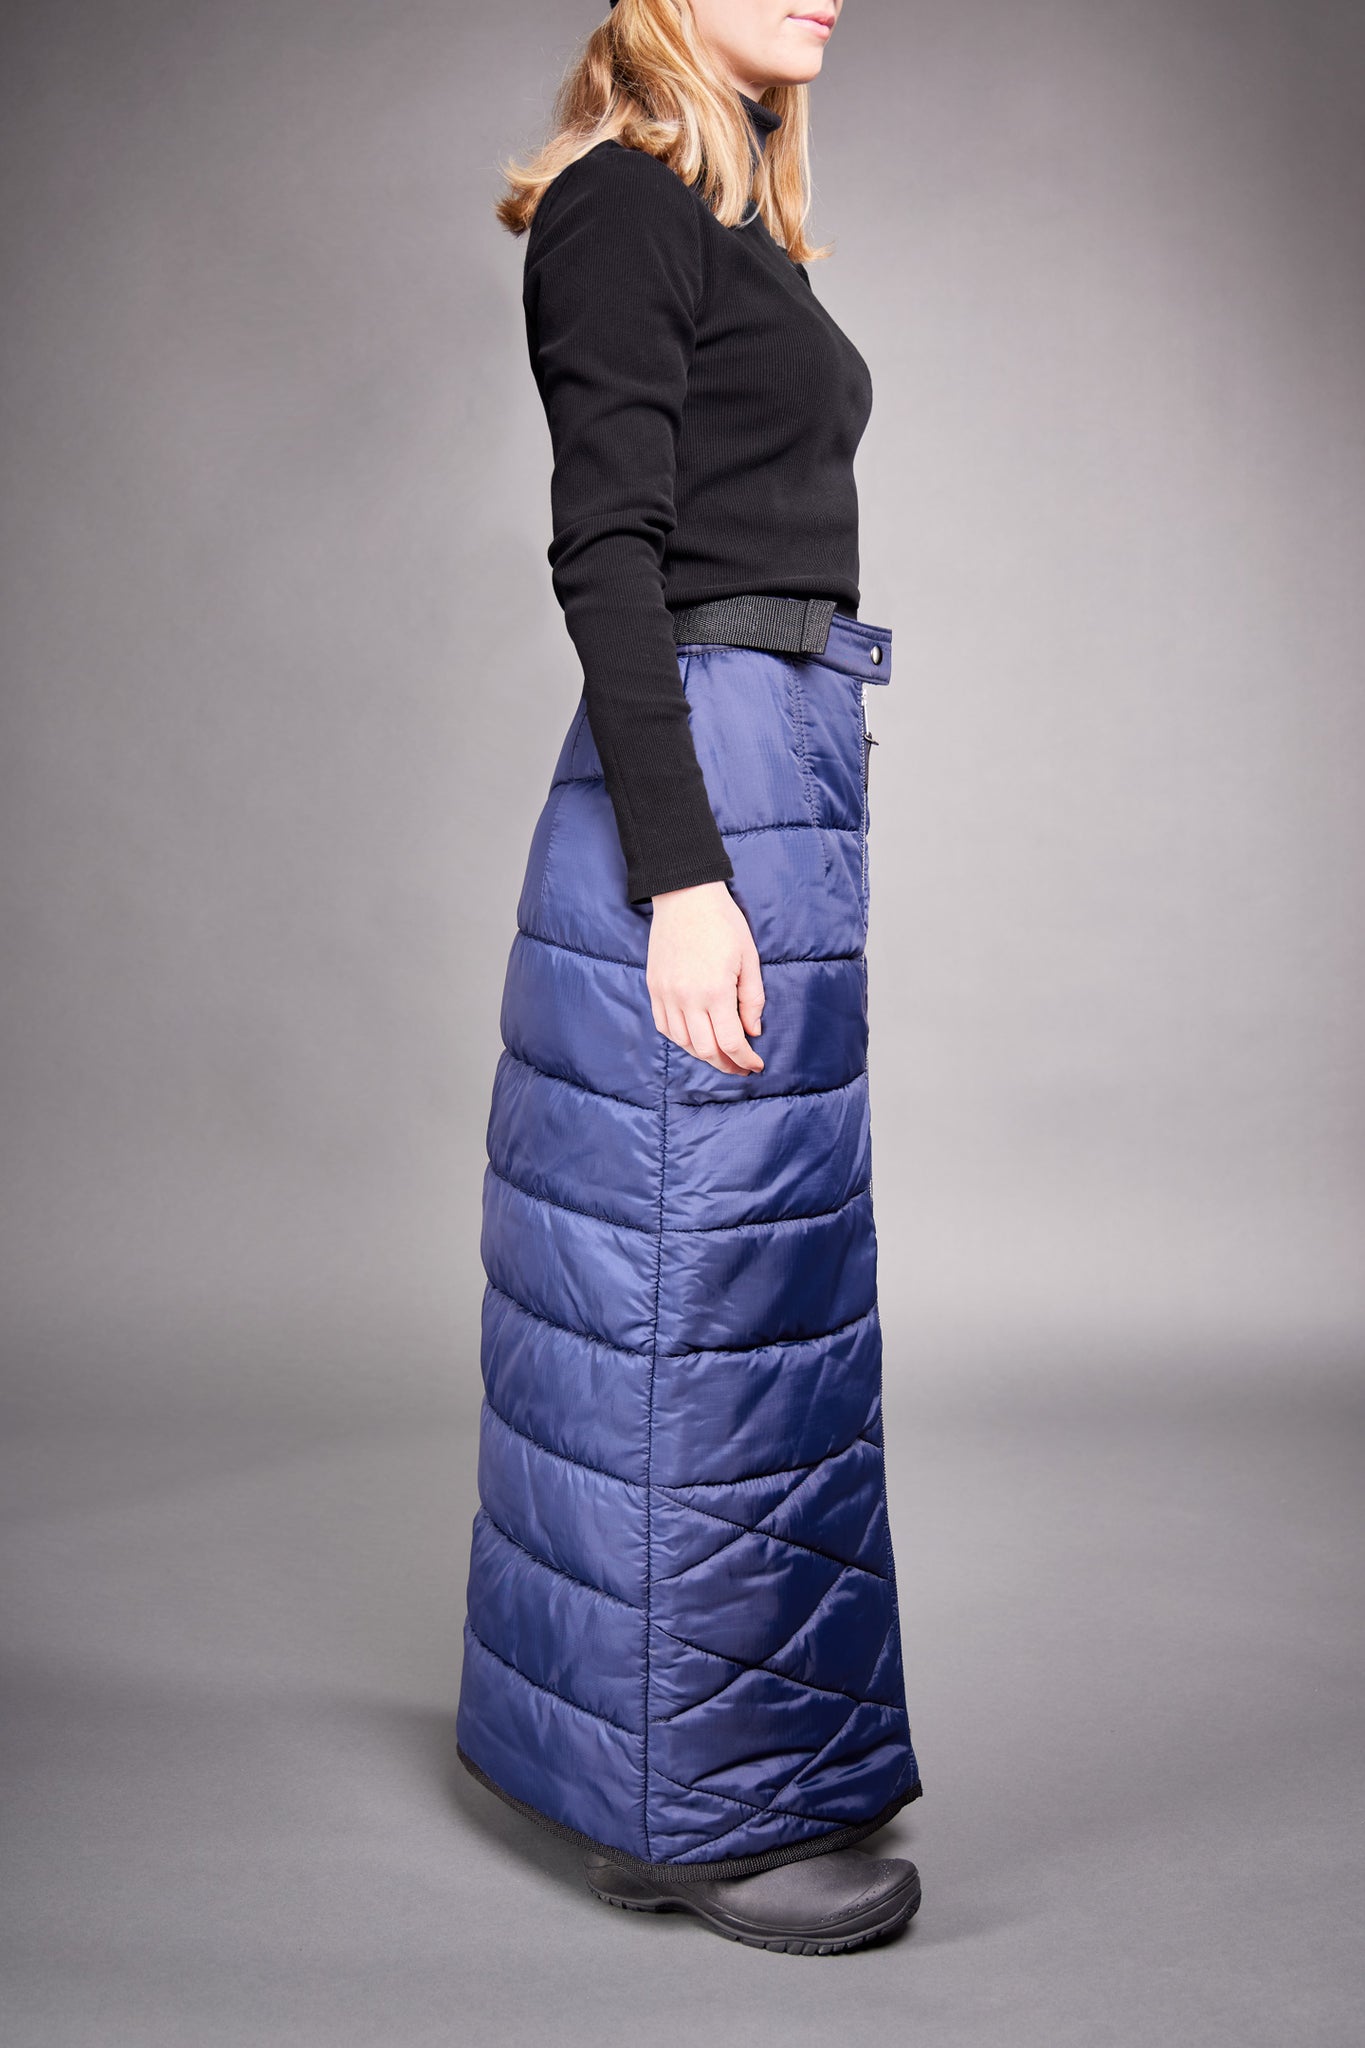 overskirt jupe d'hiver extérieur asclépiade milkweed skirt winter outdoor gear women